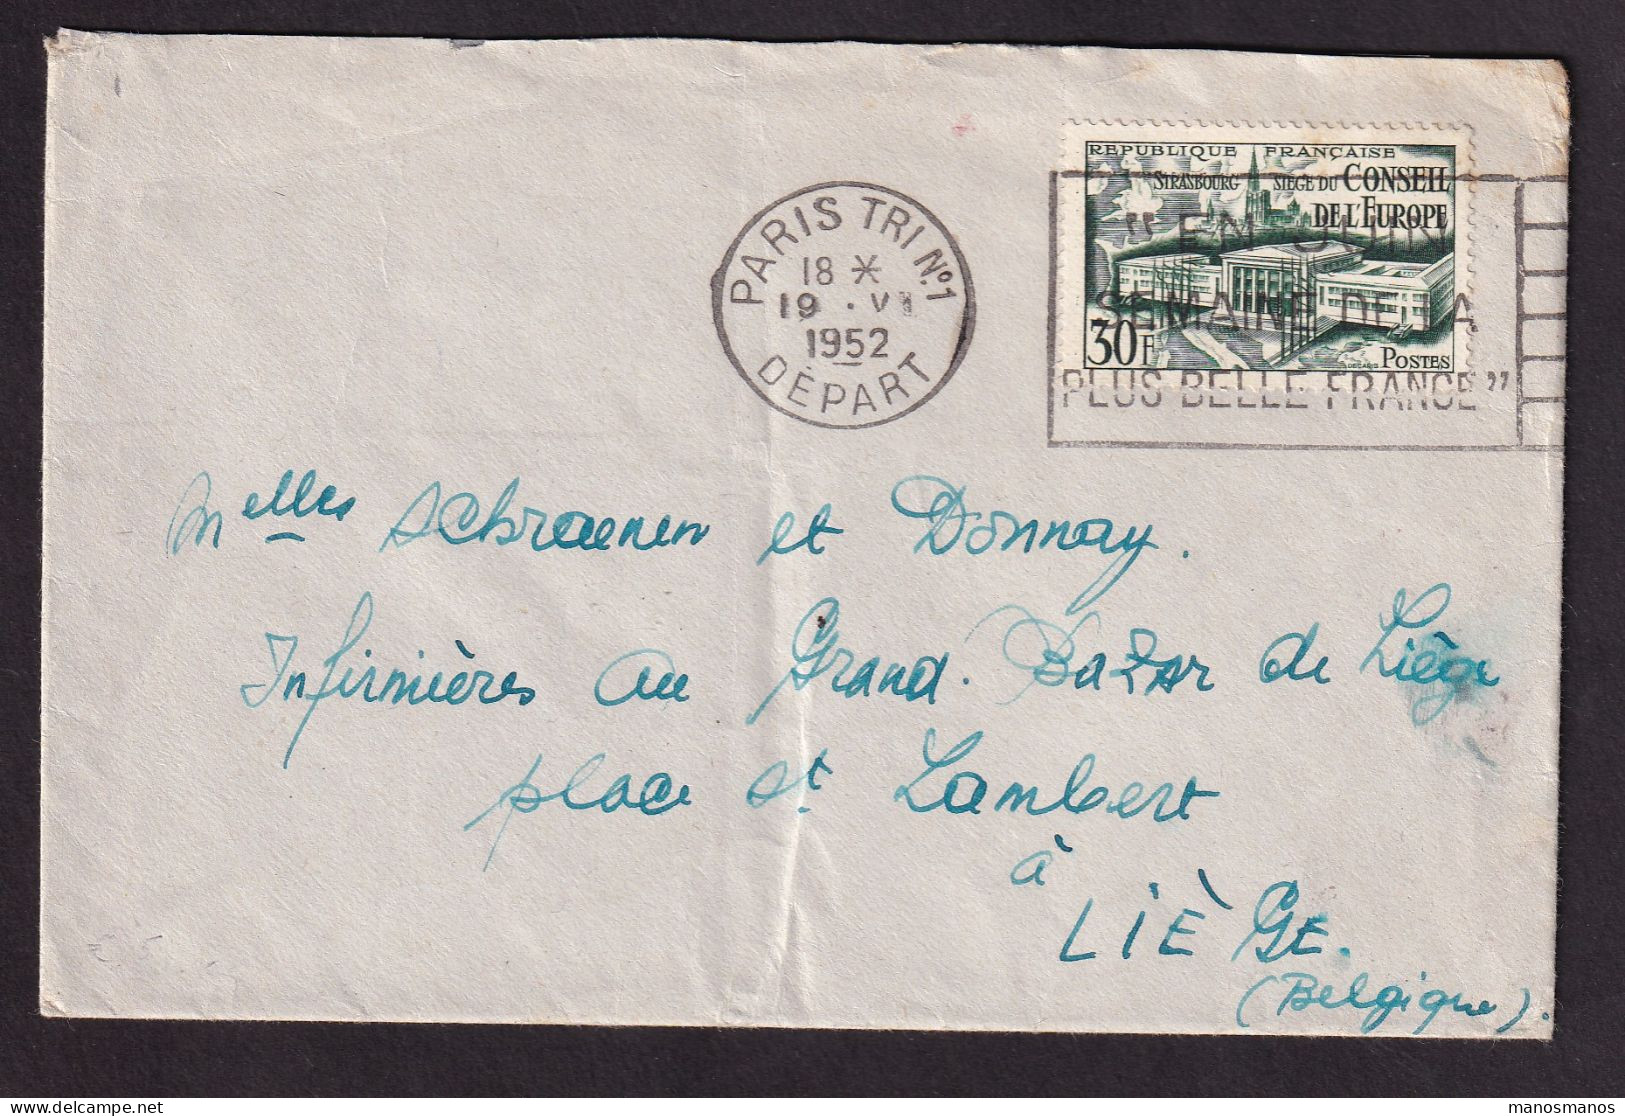 DDGG 041 - Enveloppe TP 923 (Conseil De L'Europe) PARIS 1952 Vers LIEGE Belgique - Lettres & Documents